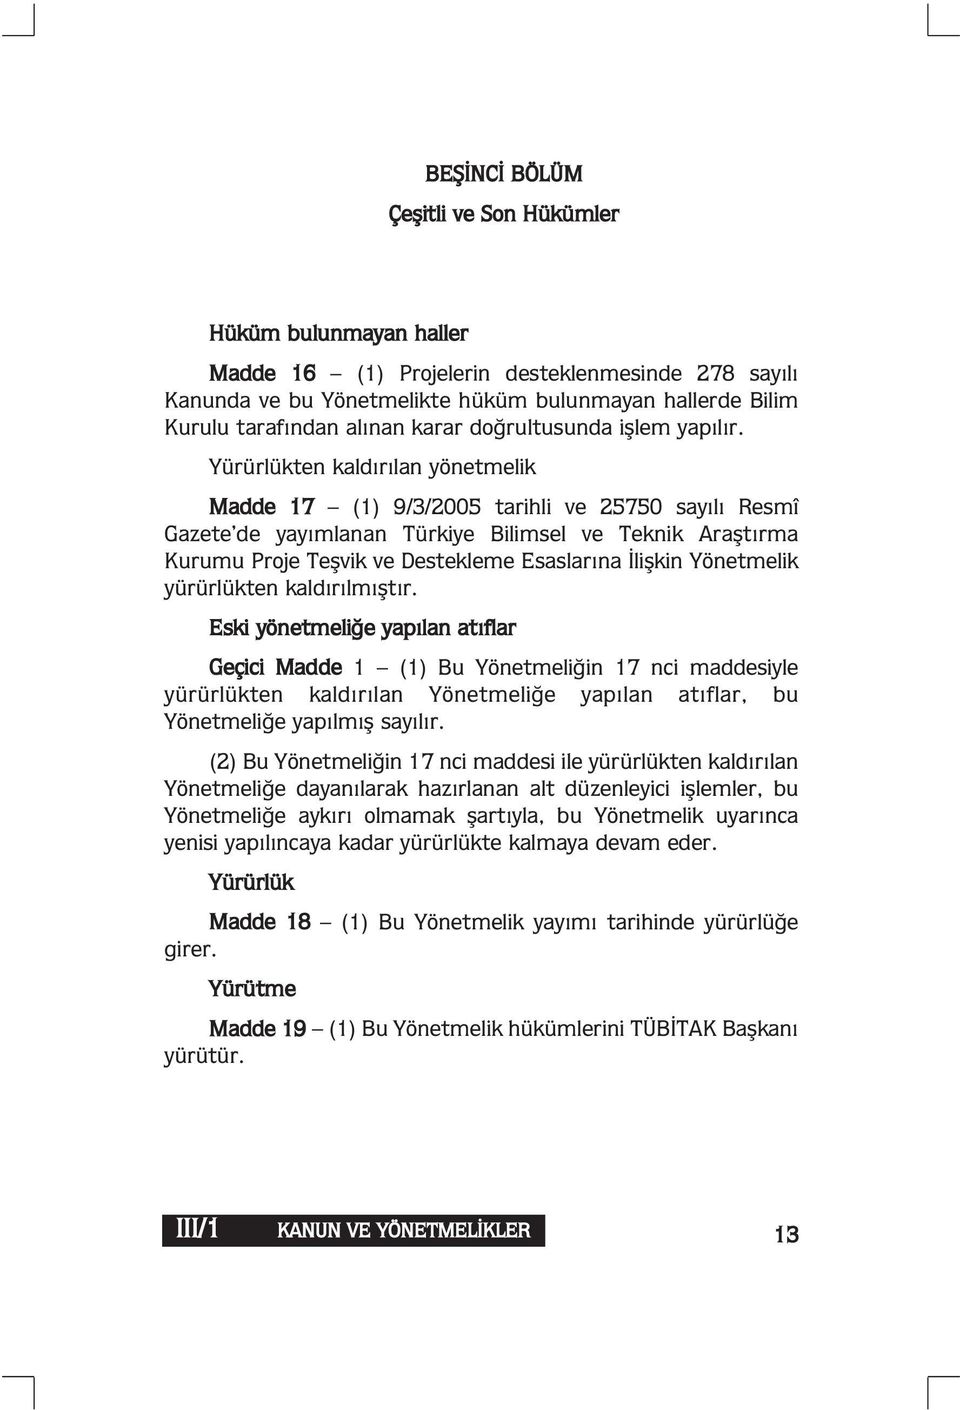 Yürürlükten kaldırılan yönetmelik Madde 17 (1) 9/3/2005 tarihli ve 25750 sayılı Resmî Gazete de yayımlanan Türkiye Bilimsel ve Teknik Araştırma Kurumu Proje Teşvik ve Destekleme Esaslarına İlişkin